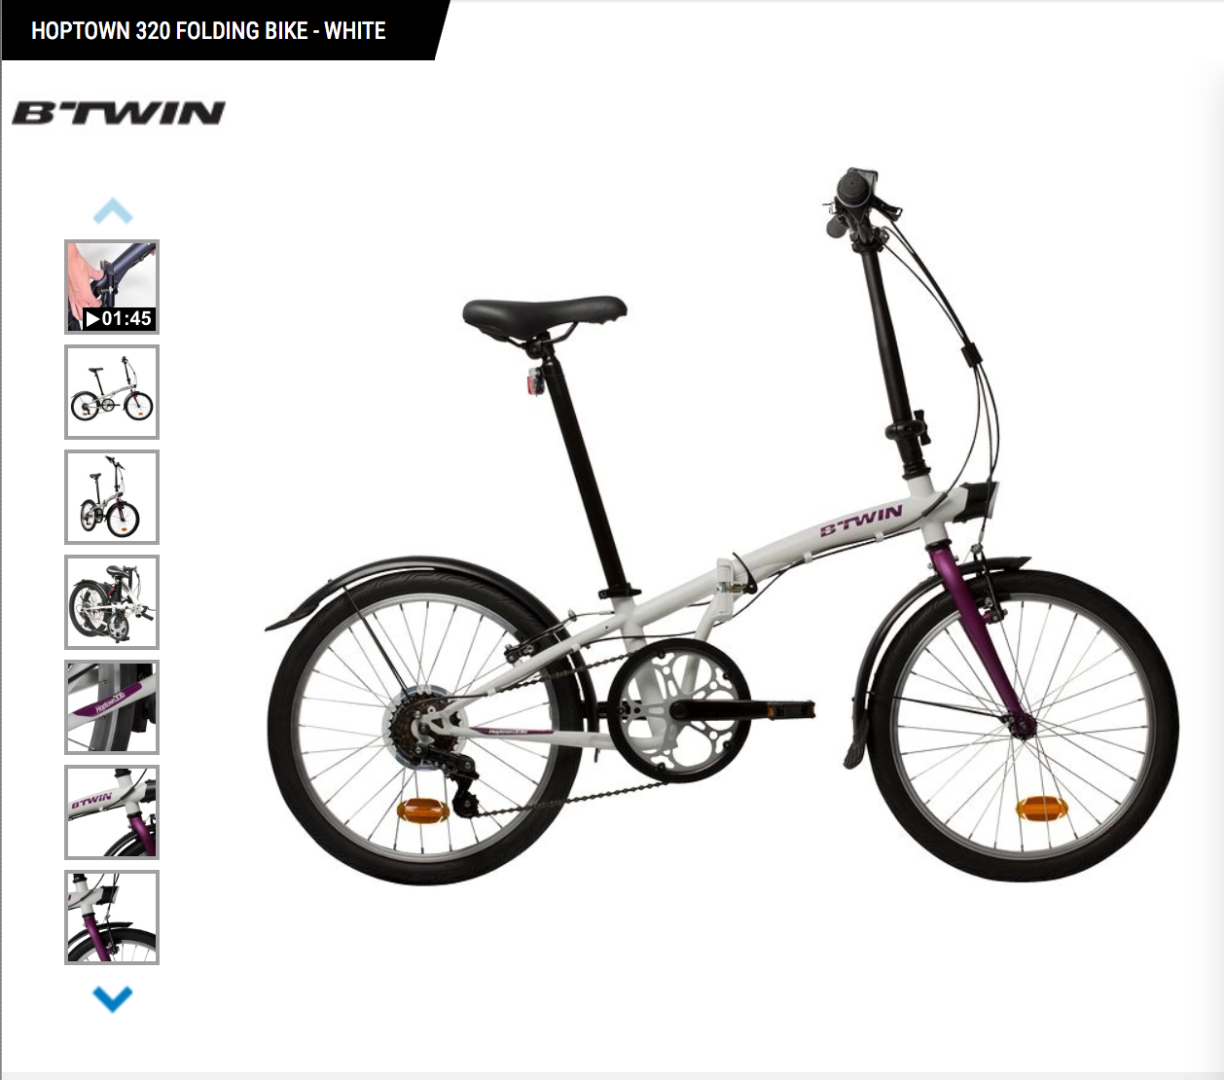 btwin hoptown 320 folding bike review